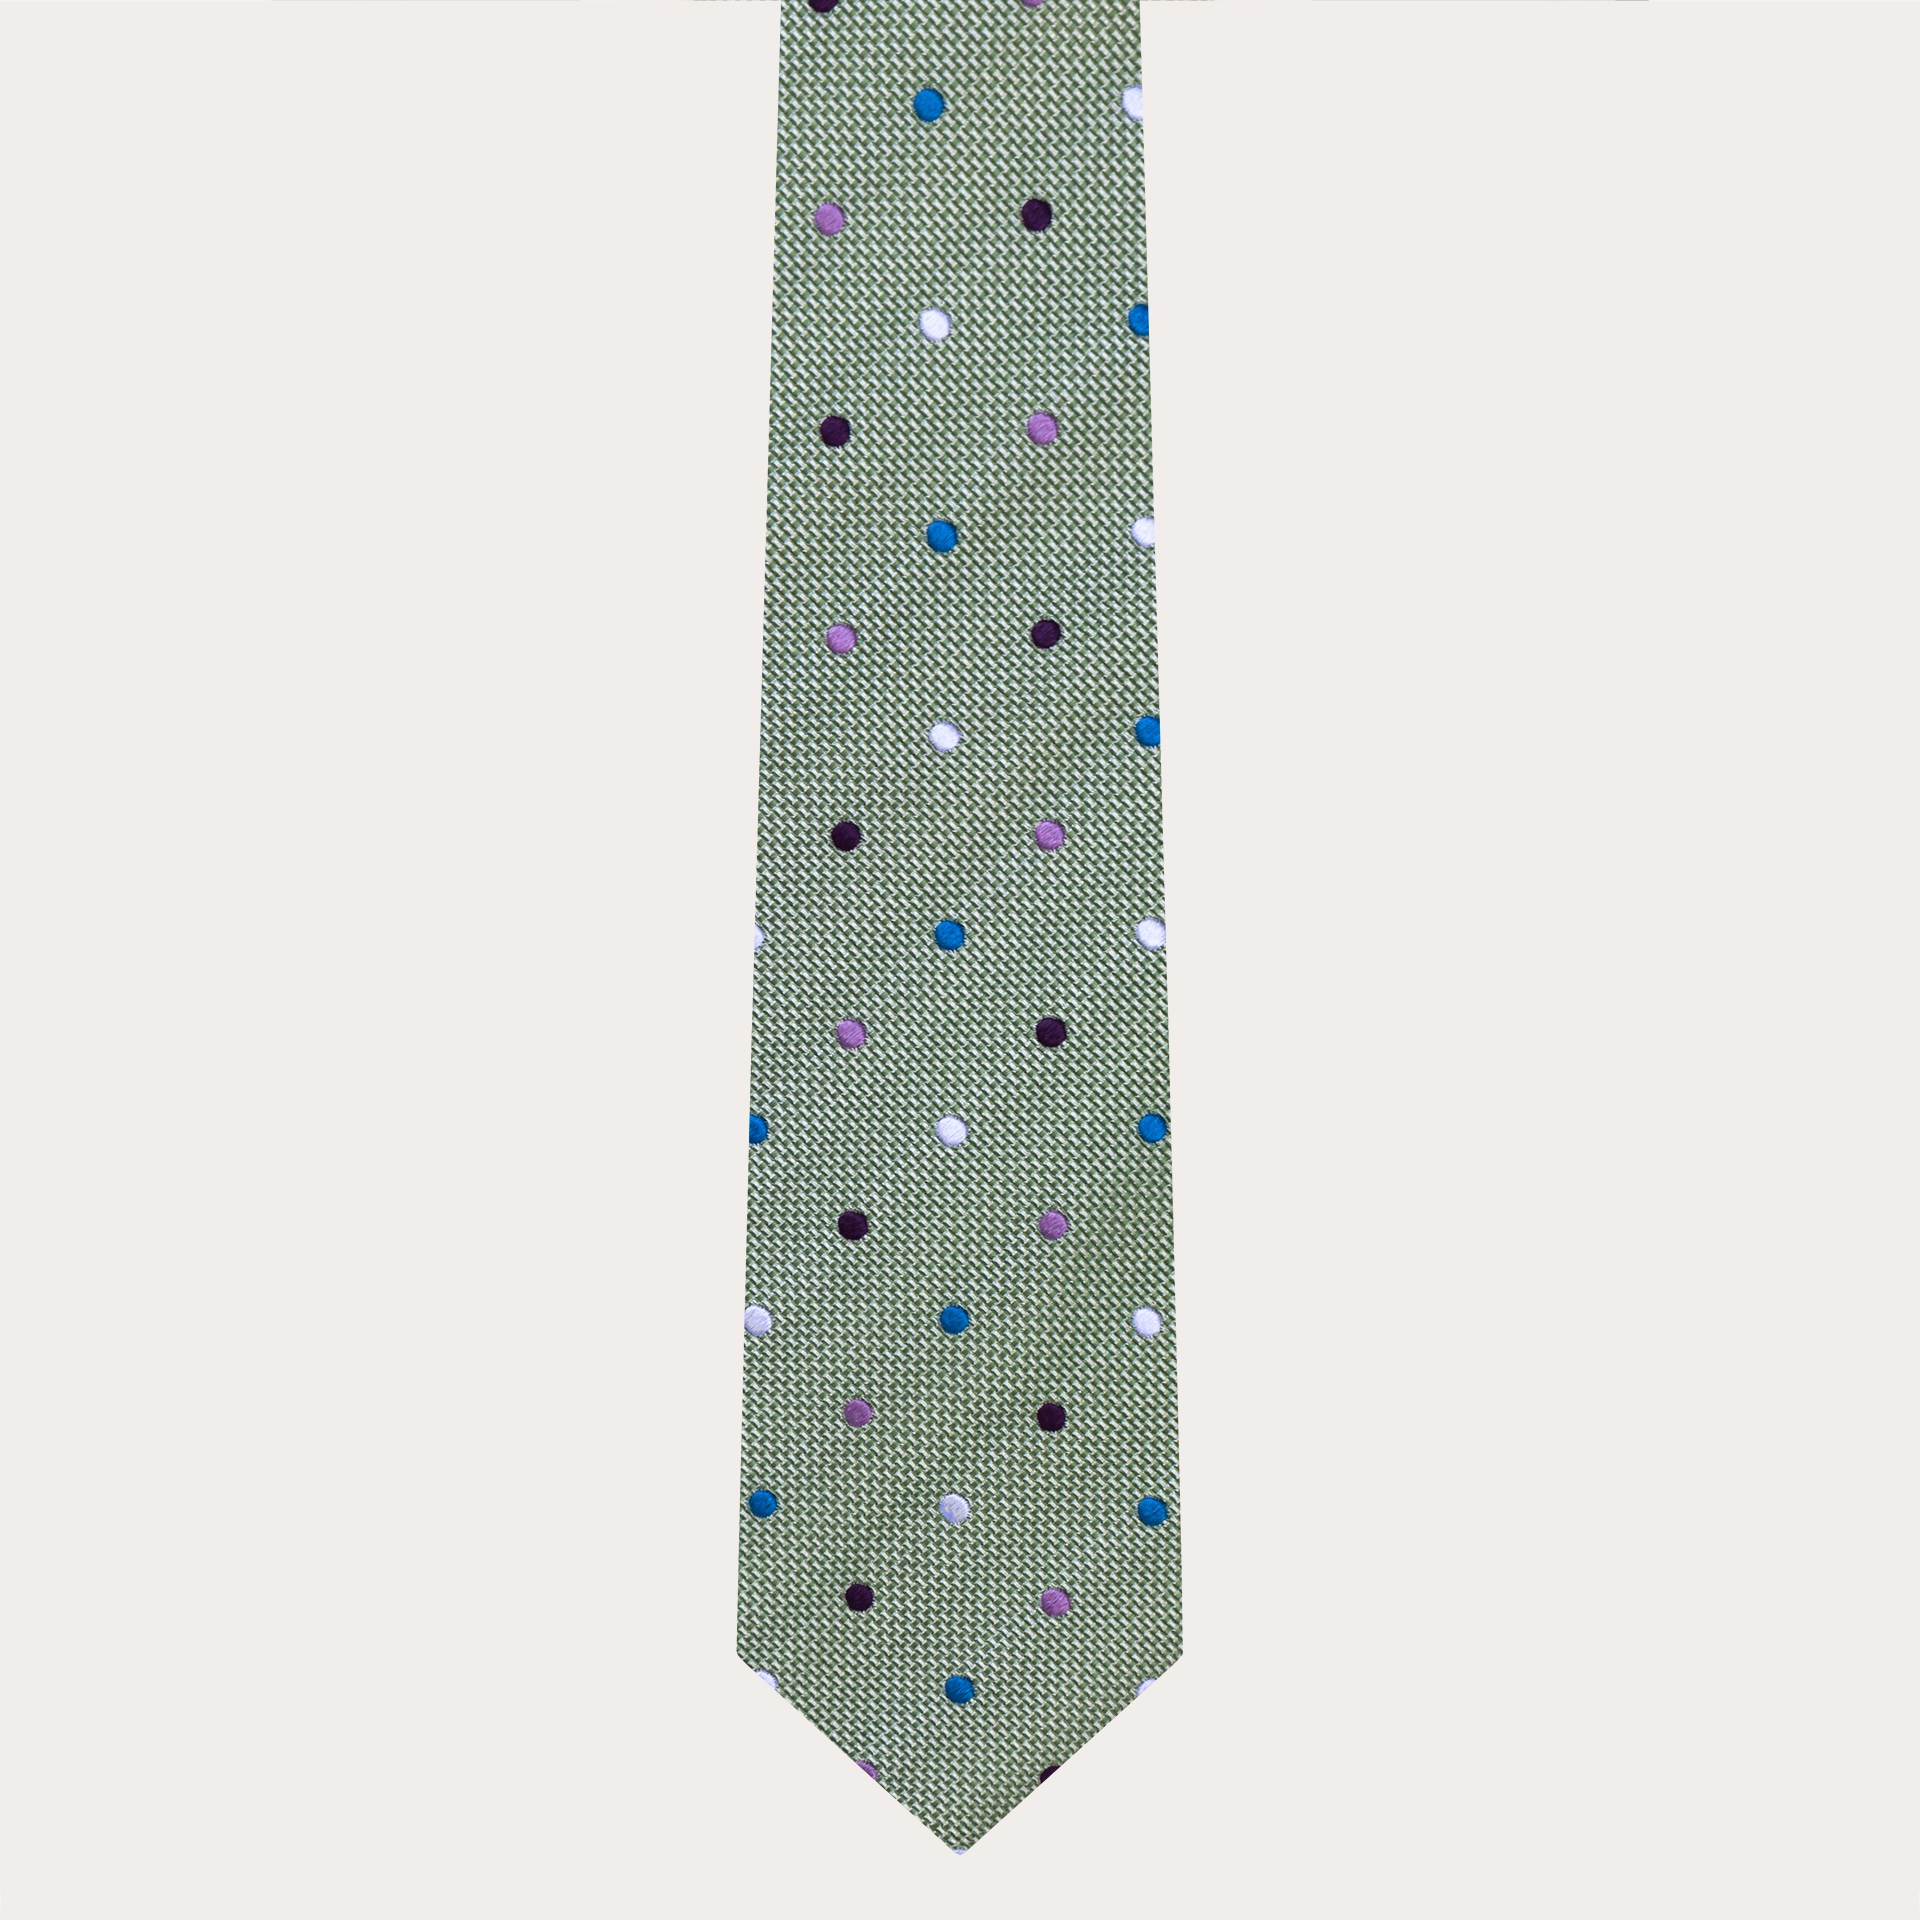 Cravate raffinée en jacquard de soie, vert à pois multicolores